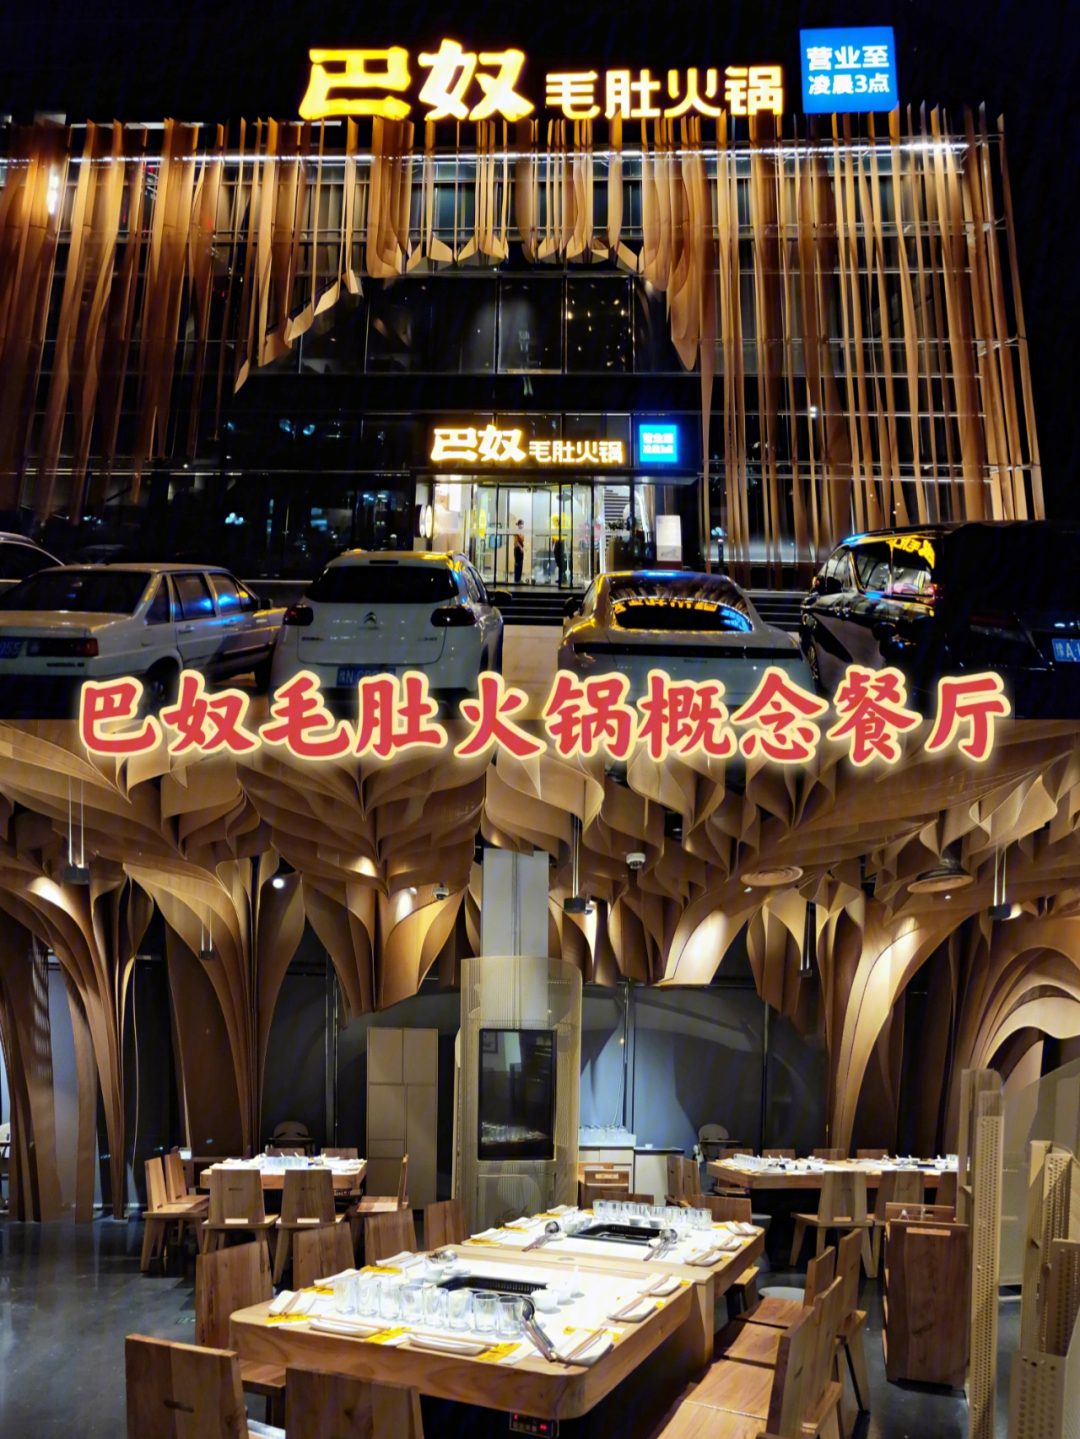 选择了巴奴火锅概念店,这家店是巴奴在郑州最有特色的一家店了,建筑